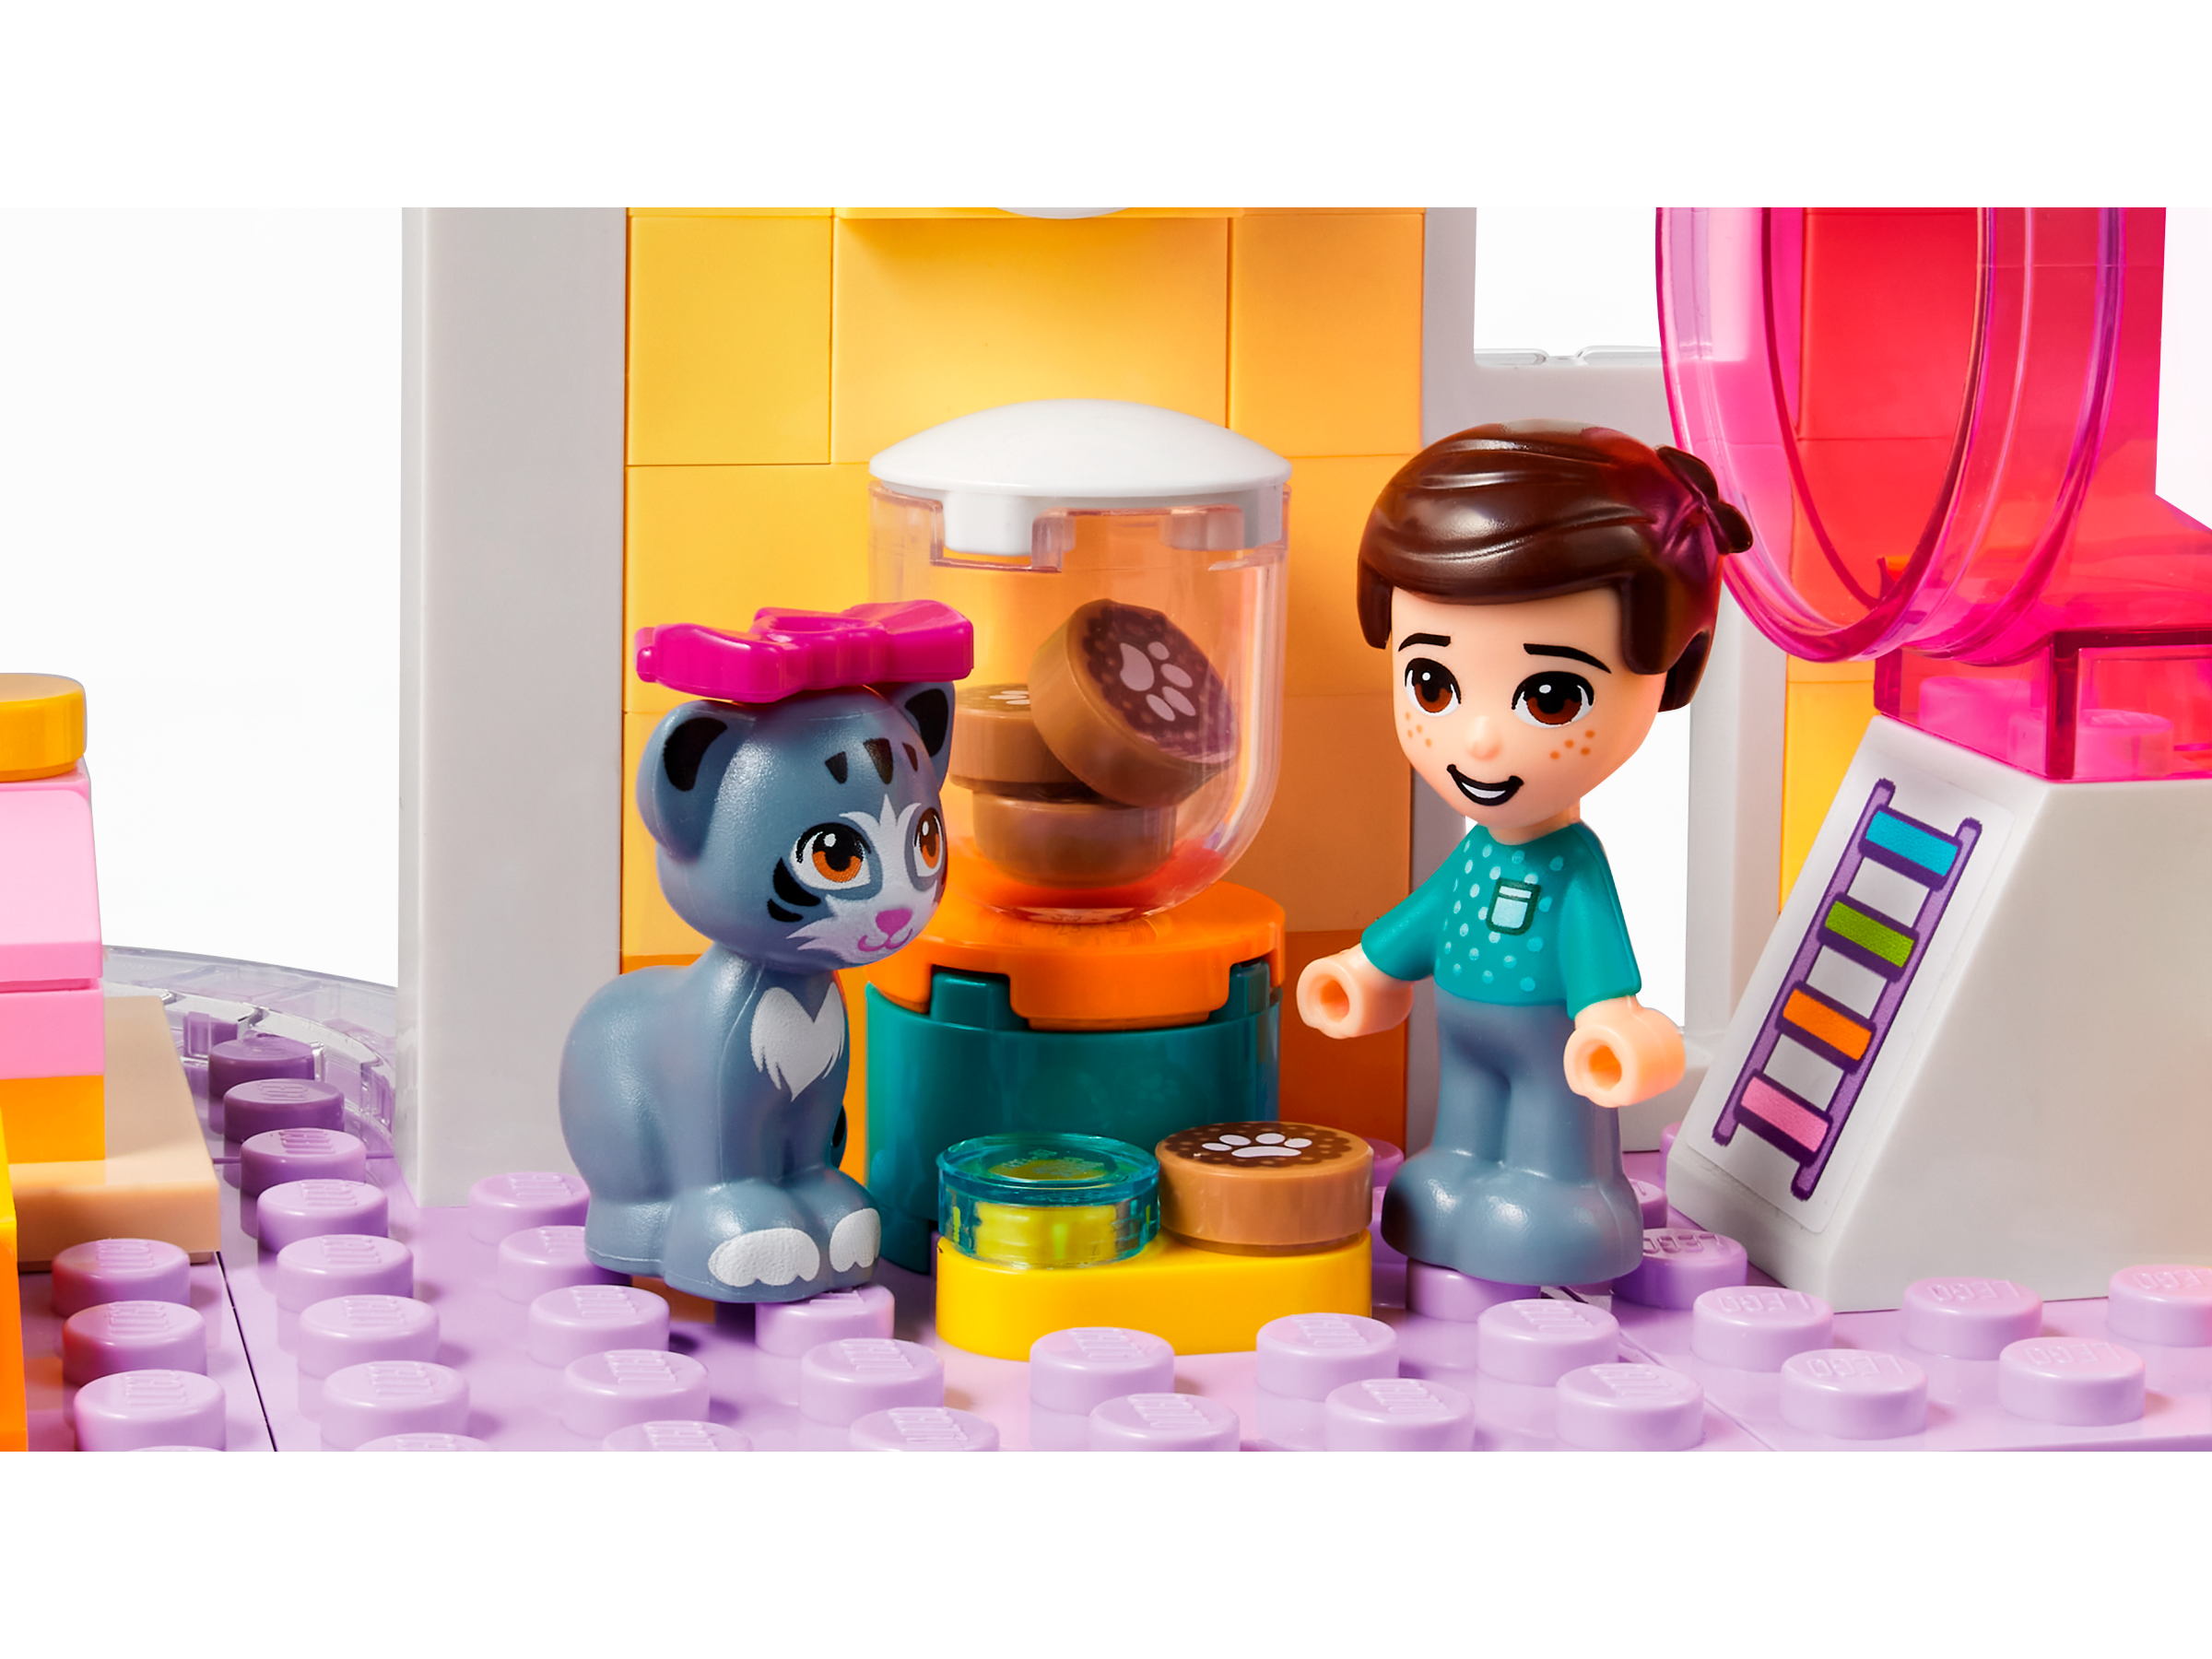 LEGO 41718 Friends La Garderie Des Animaux, Heartlake City, Jouet 7 Ans et  Plus, Avec Figurines et 3 Mini-Poupées - ADMI